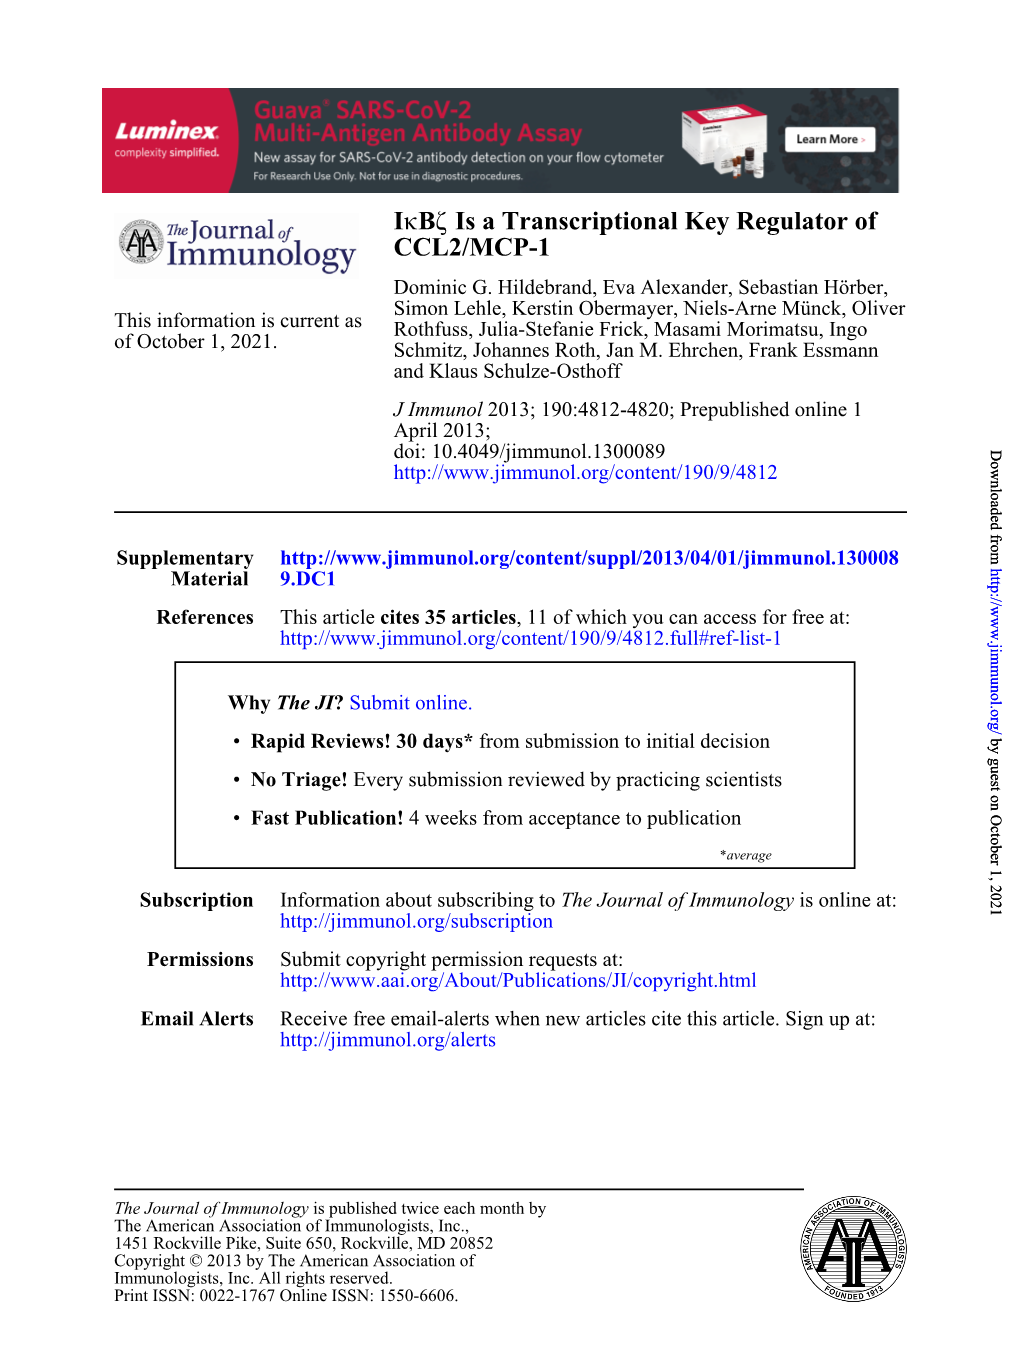 CCL2/MCP-1 Is a Transcriptional Key Regulator of Ζ B Κi